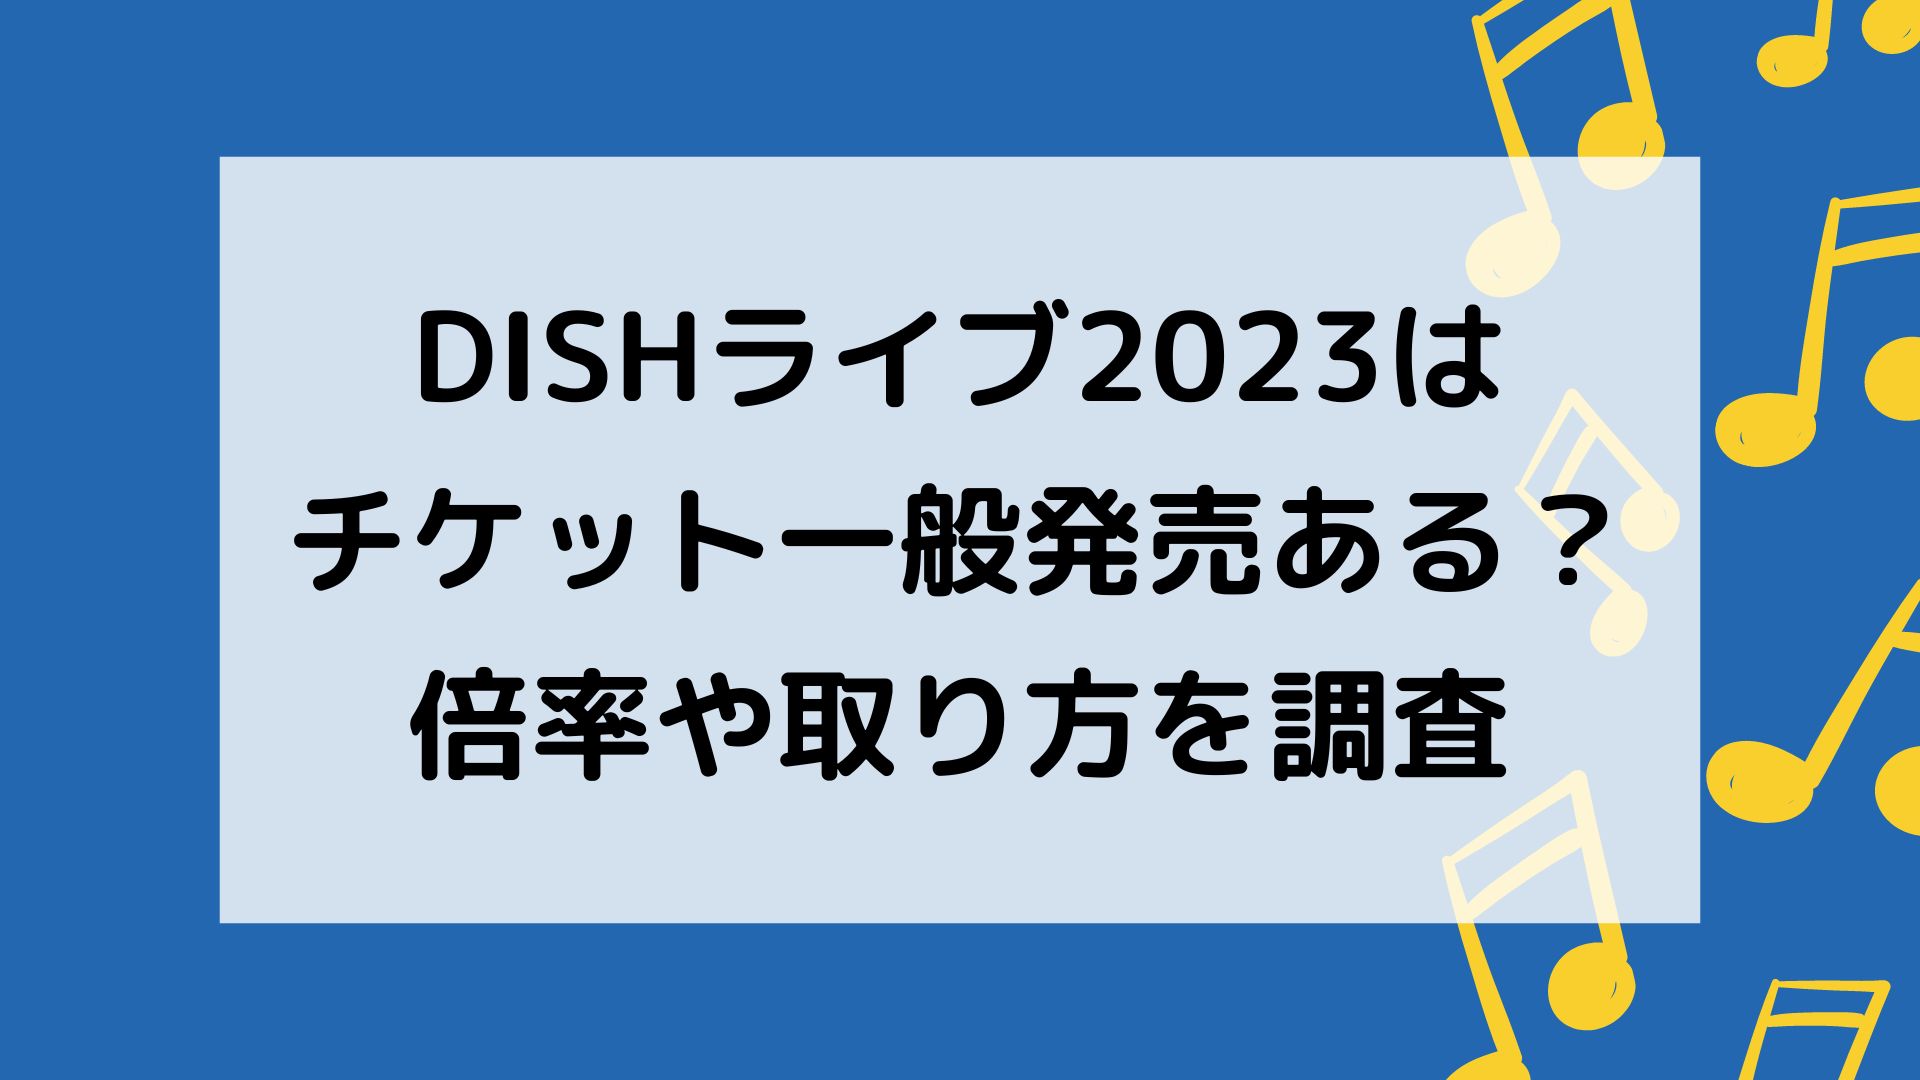 DISHライブ2023チケット倍率や一般発売について